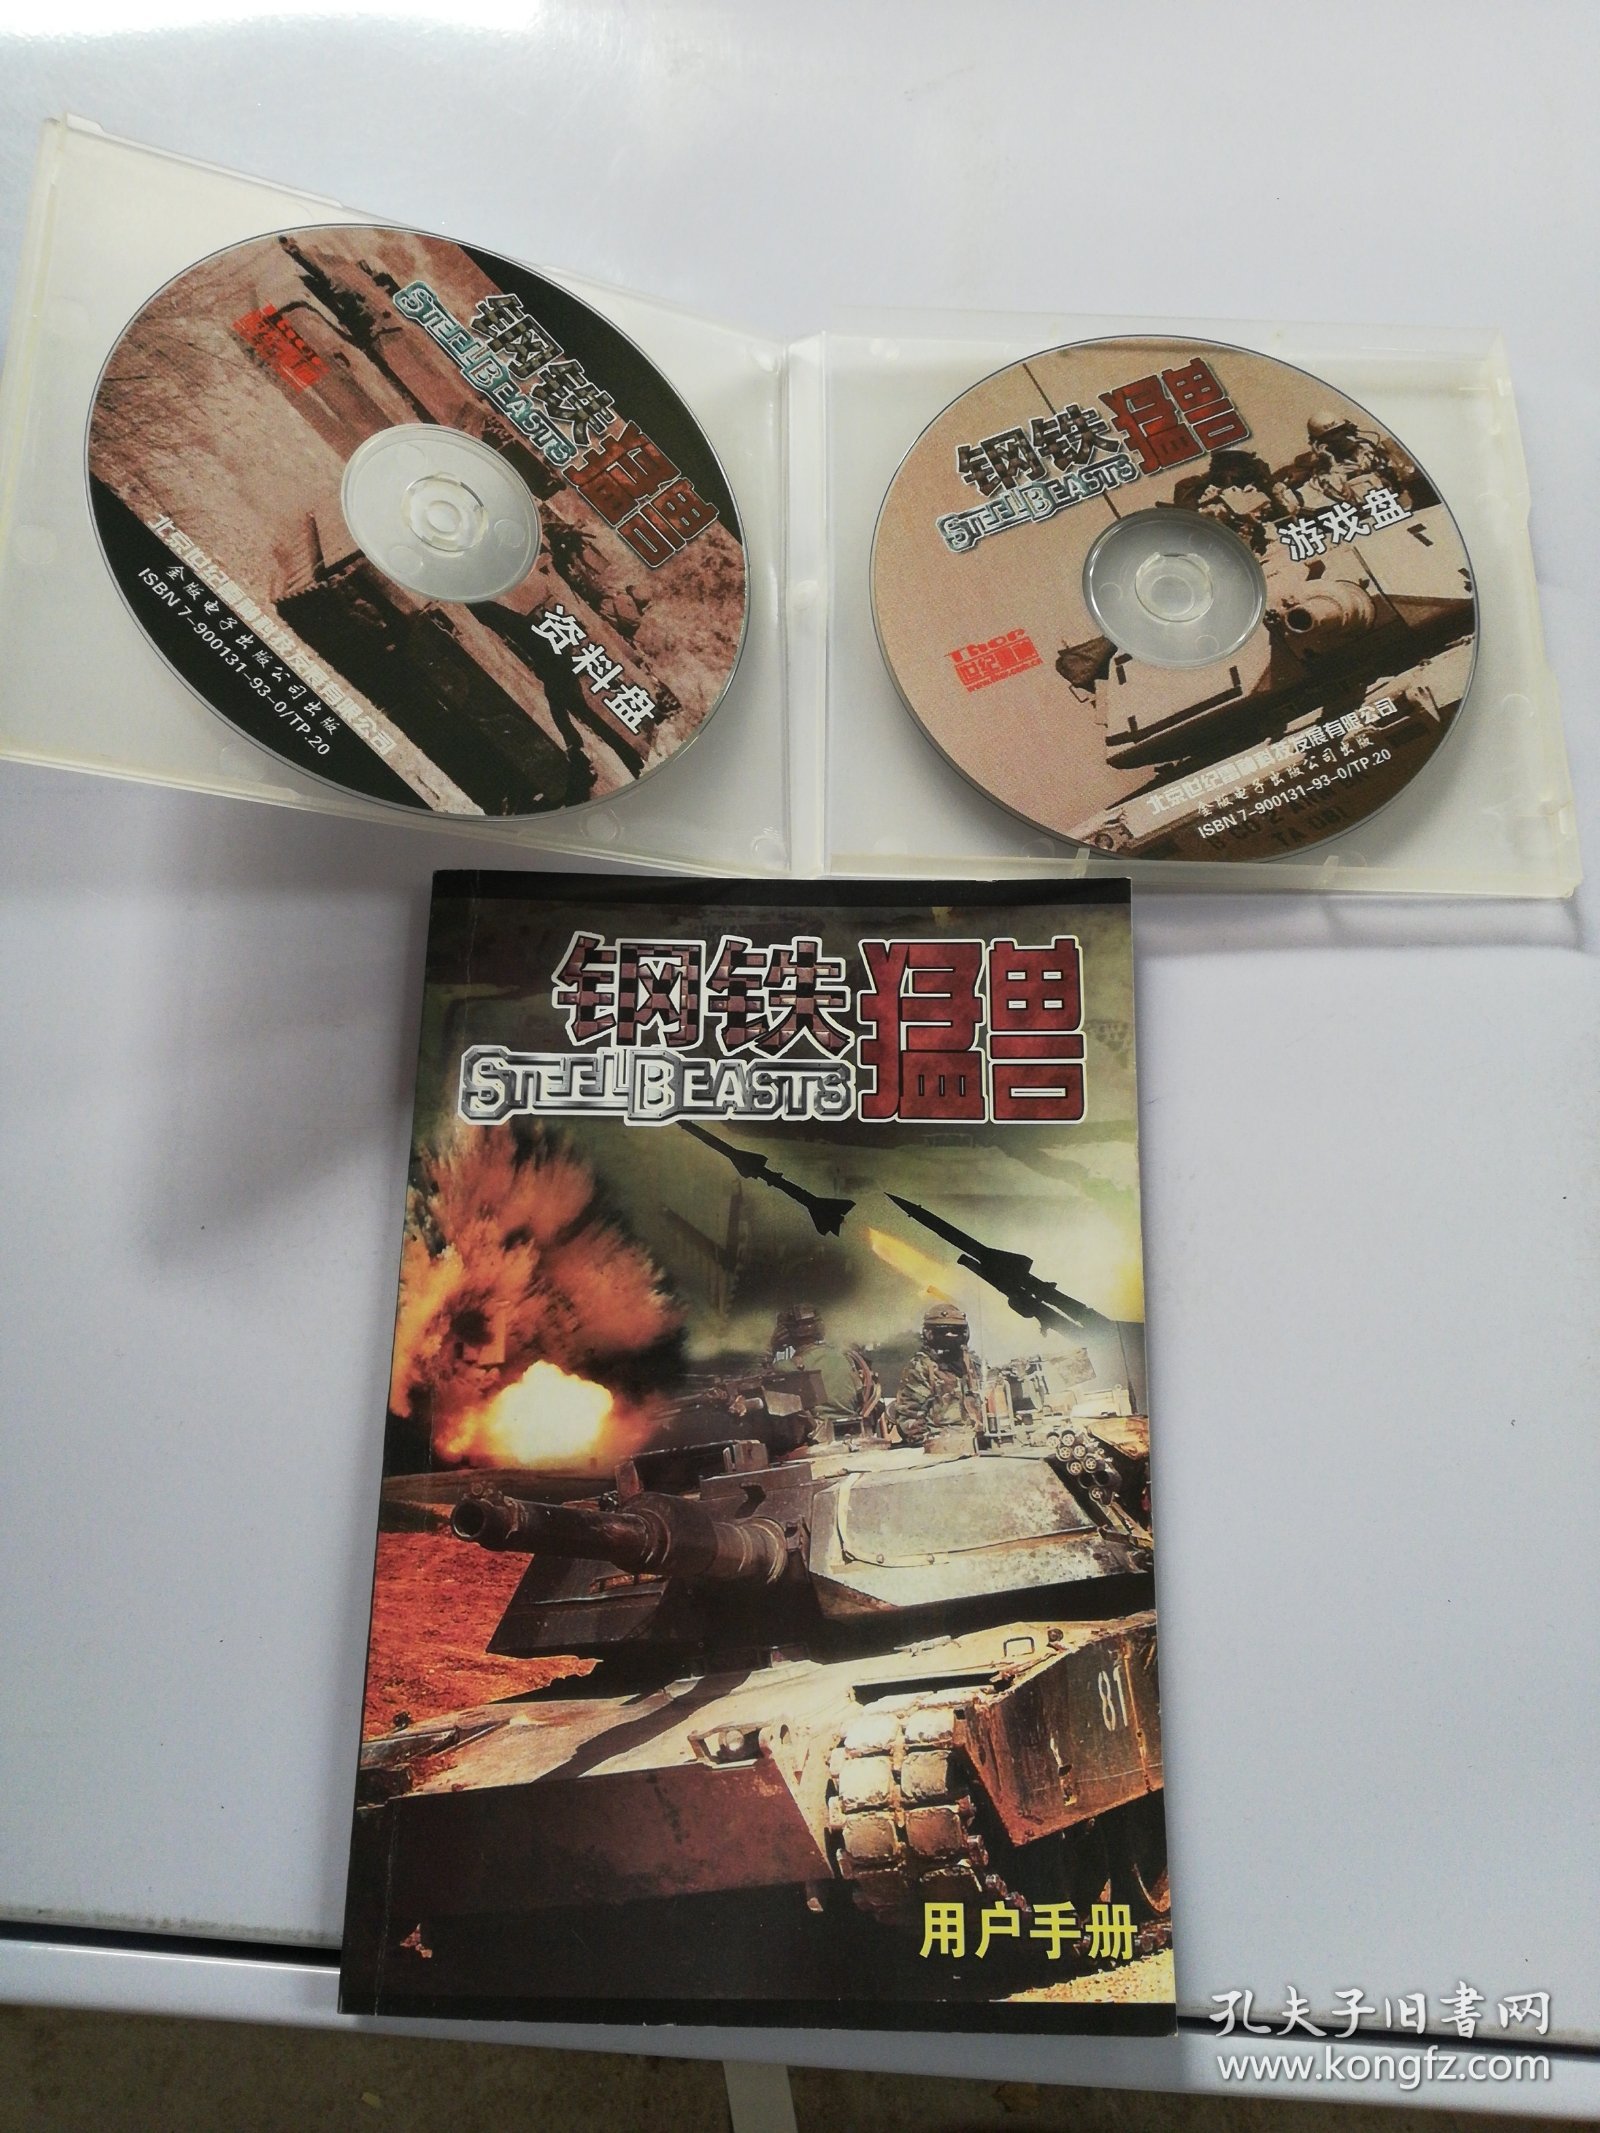 游戏光盘 钢铁猛兽 2CD+用户手册 简体中文版【无法判别是否可以正常播放】